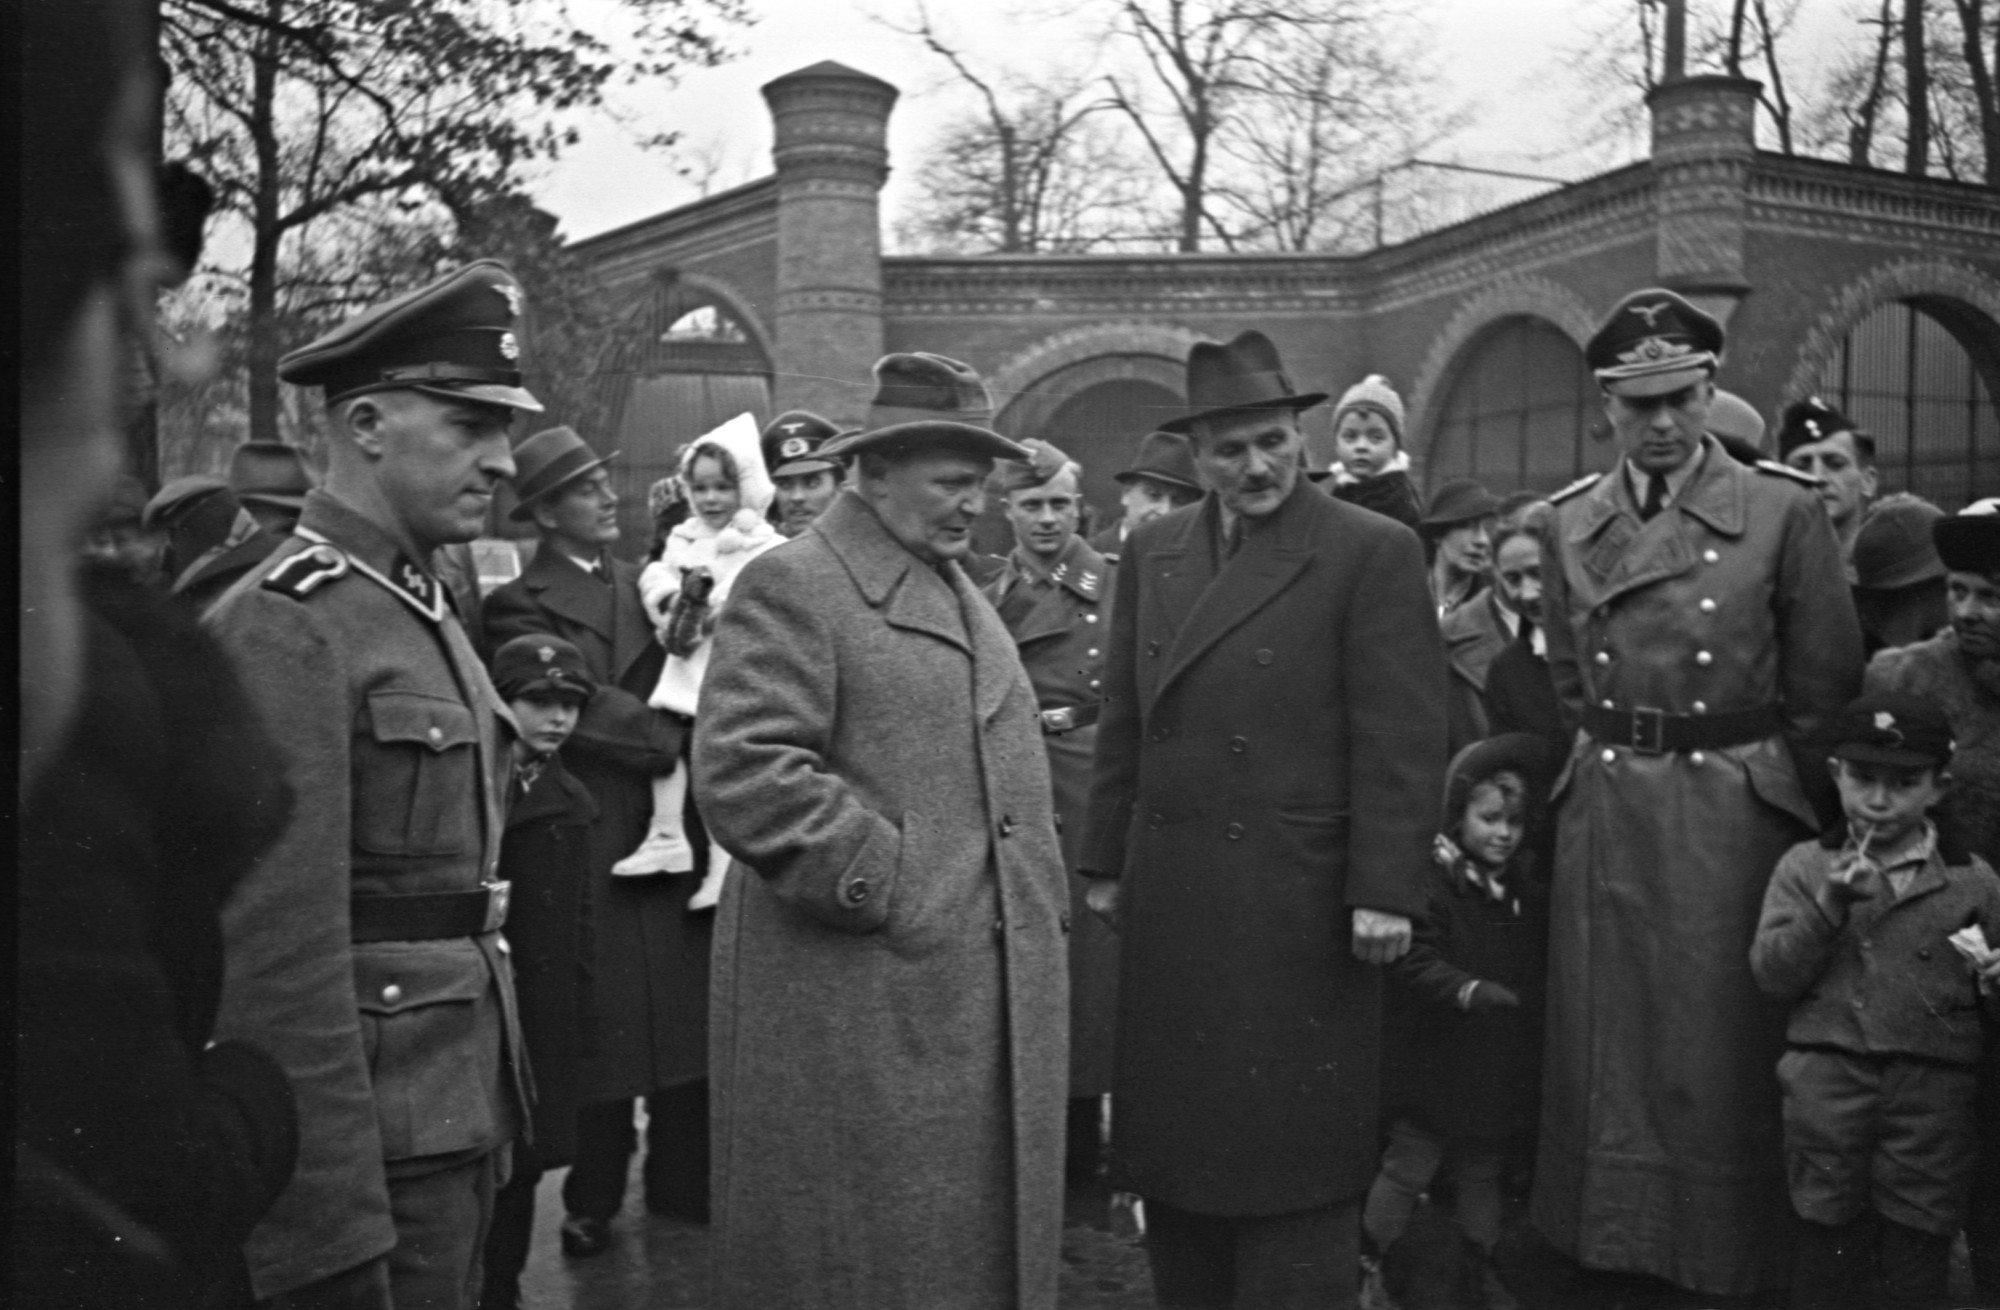 Schwarz-weiß Foto: Zwei Männer in Mantel und Hut, umgeben von Familien mit Kindern sowie Personen in nationalsozialistischen Uniformen. Backsteinmauer mit Fensterbögen im Hintergrund.